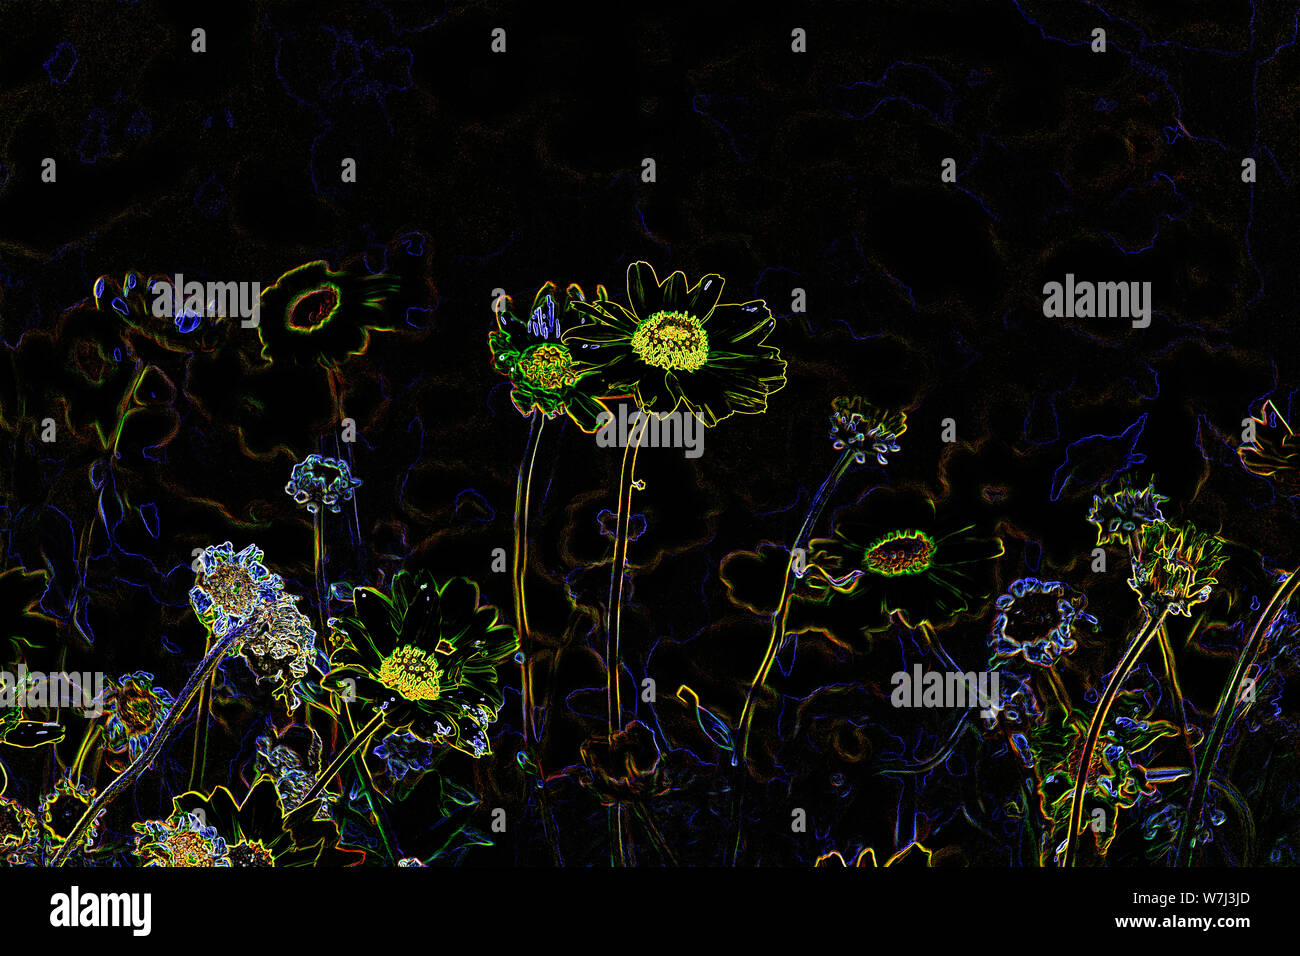 Colorful Abstract Neon psychédélique Fleurs Jewel-Toned sur fond noir. Banque D'Images